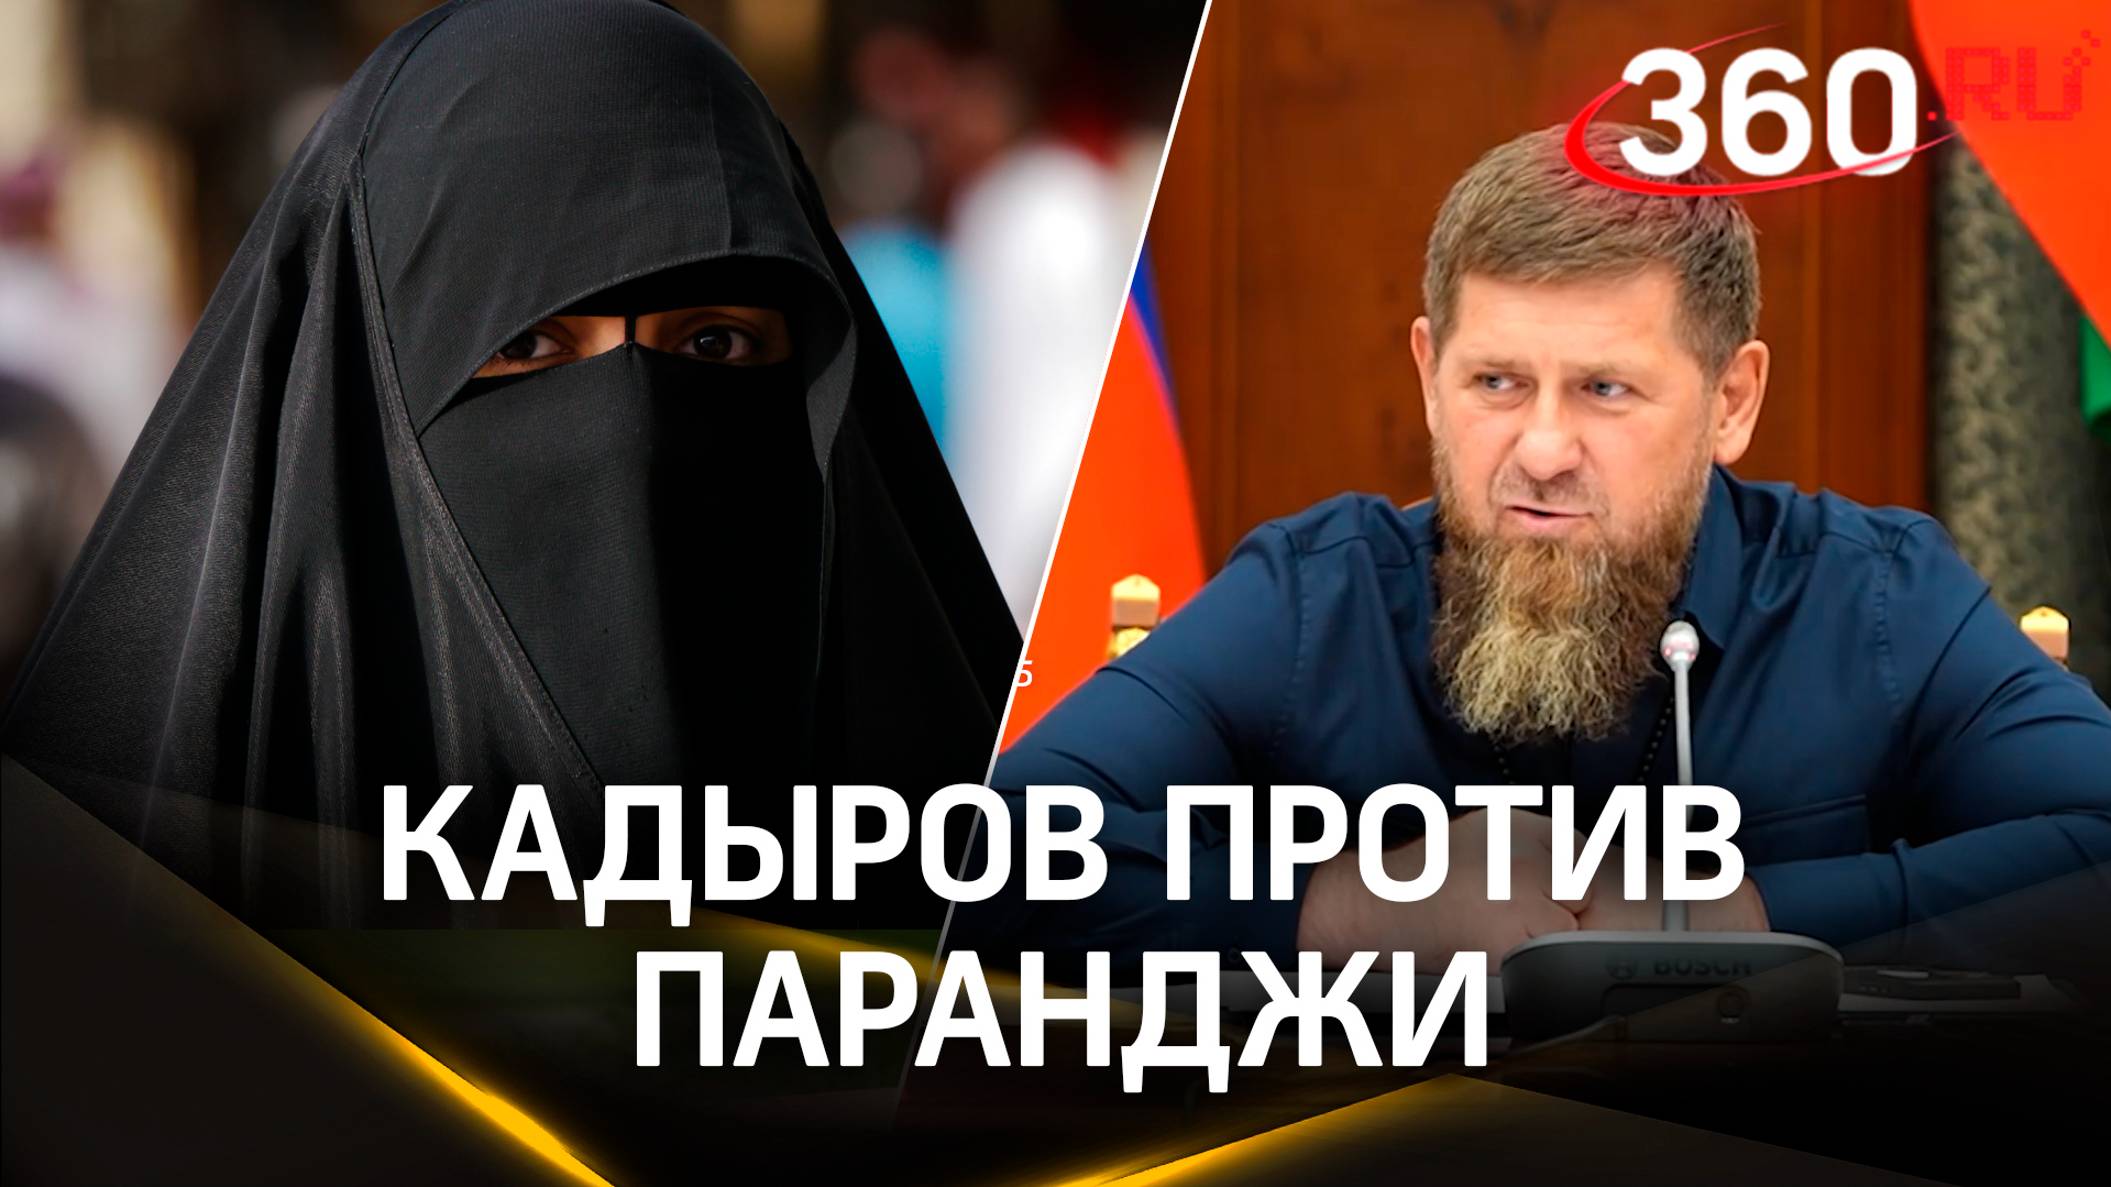 Кадыров обещает убить за хиджаб и свою дочь, но высказался против паранджи